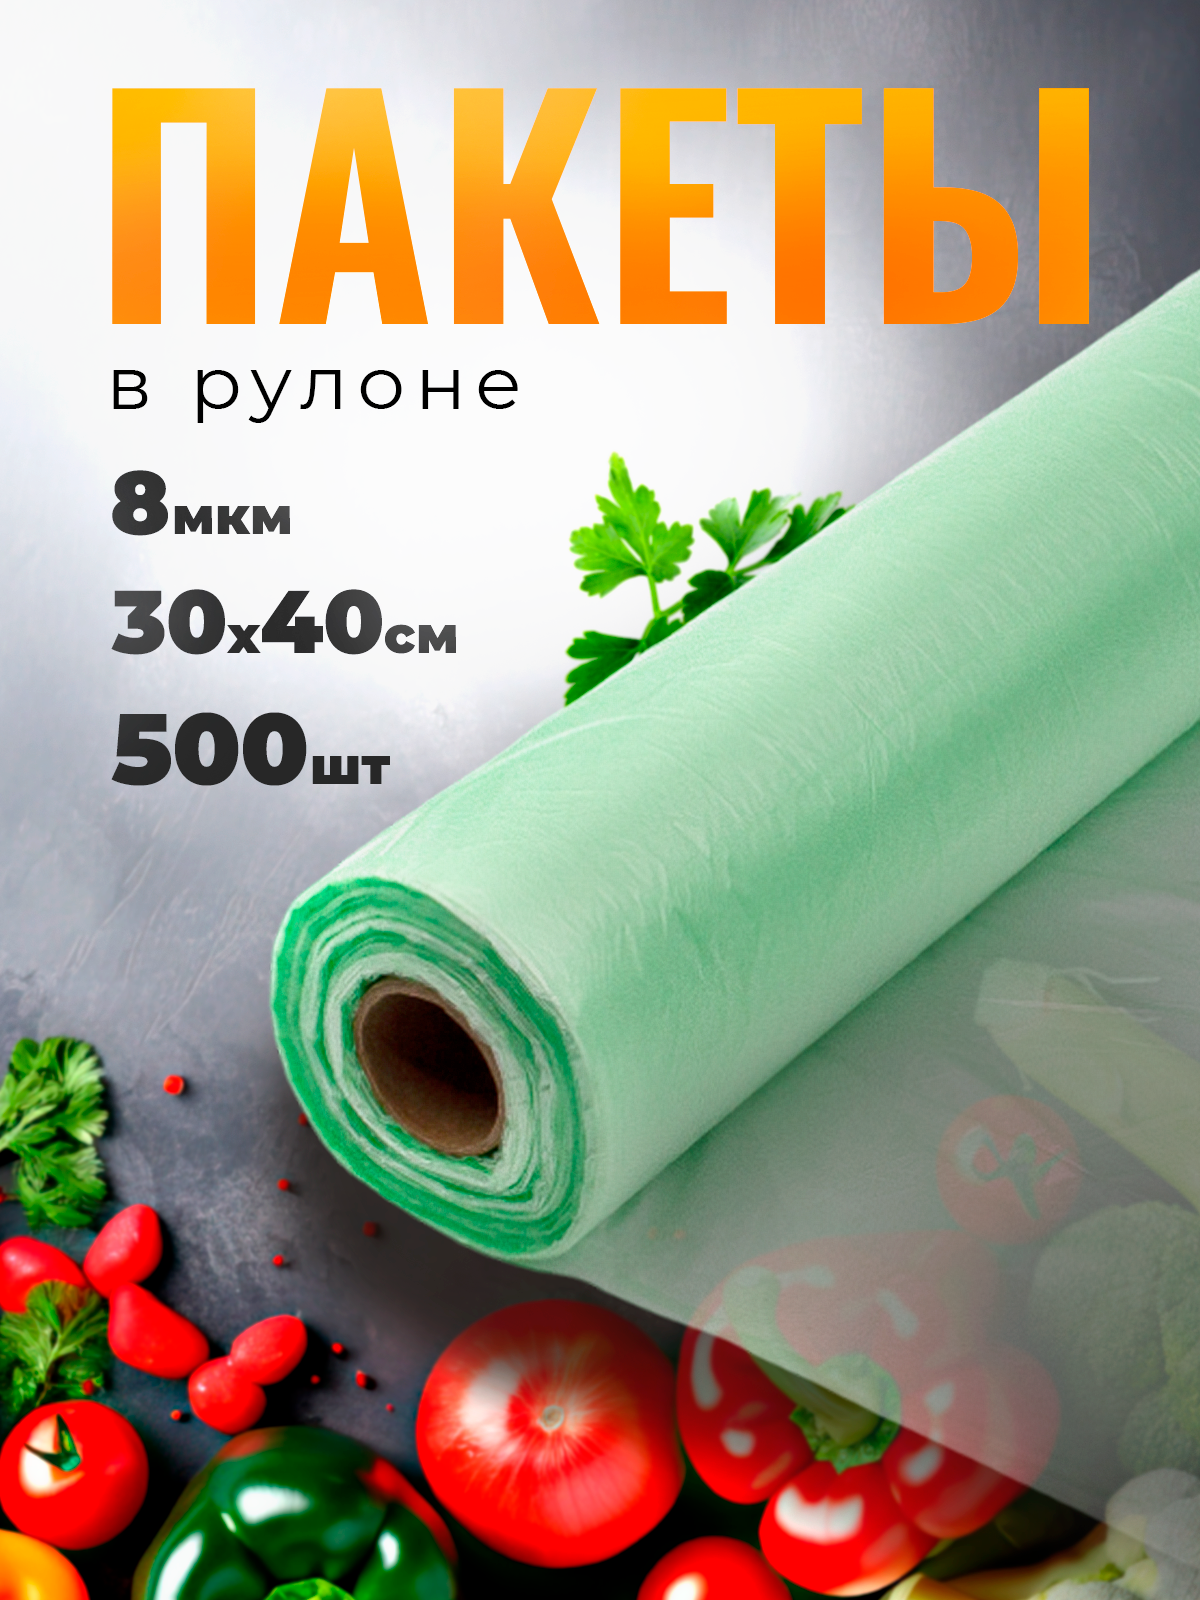 Пакет пищевой фасовочный прозрачный зеленый в рулоне 30х40см, 8 мкм, 500шт